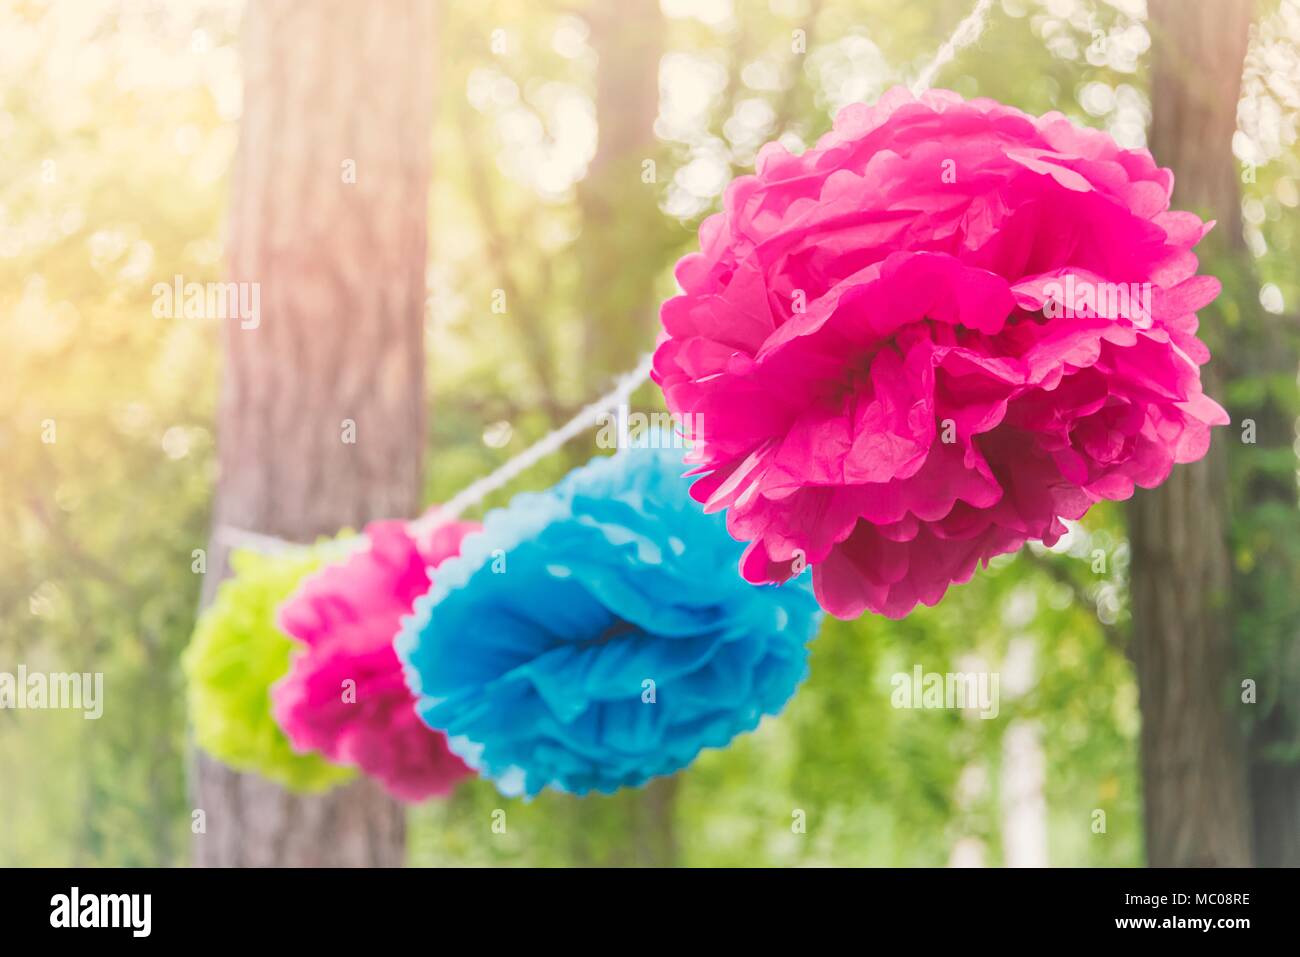 Nahaufnahme einer bunten party Girlande aus Papier Blumen zwischen Bäumen in einem Park bei einer Open Air Feier event gebunden. Stockfoto